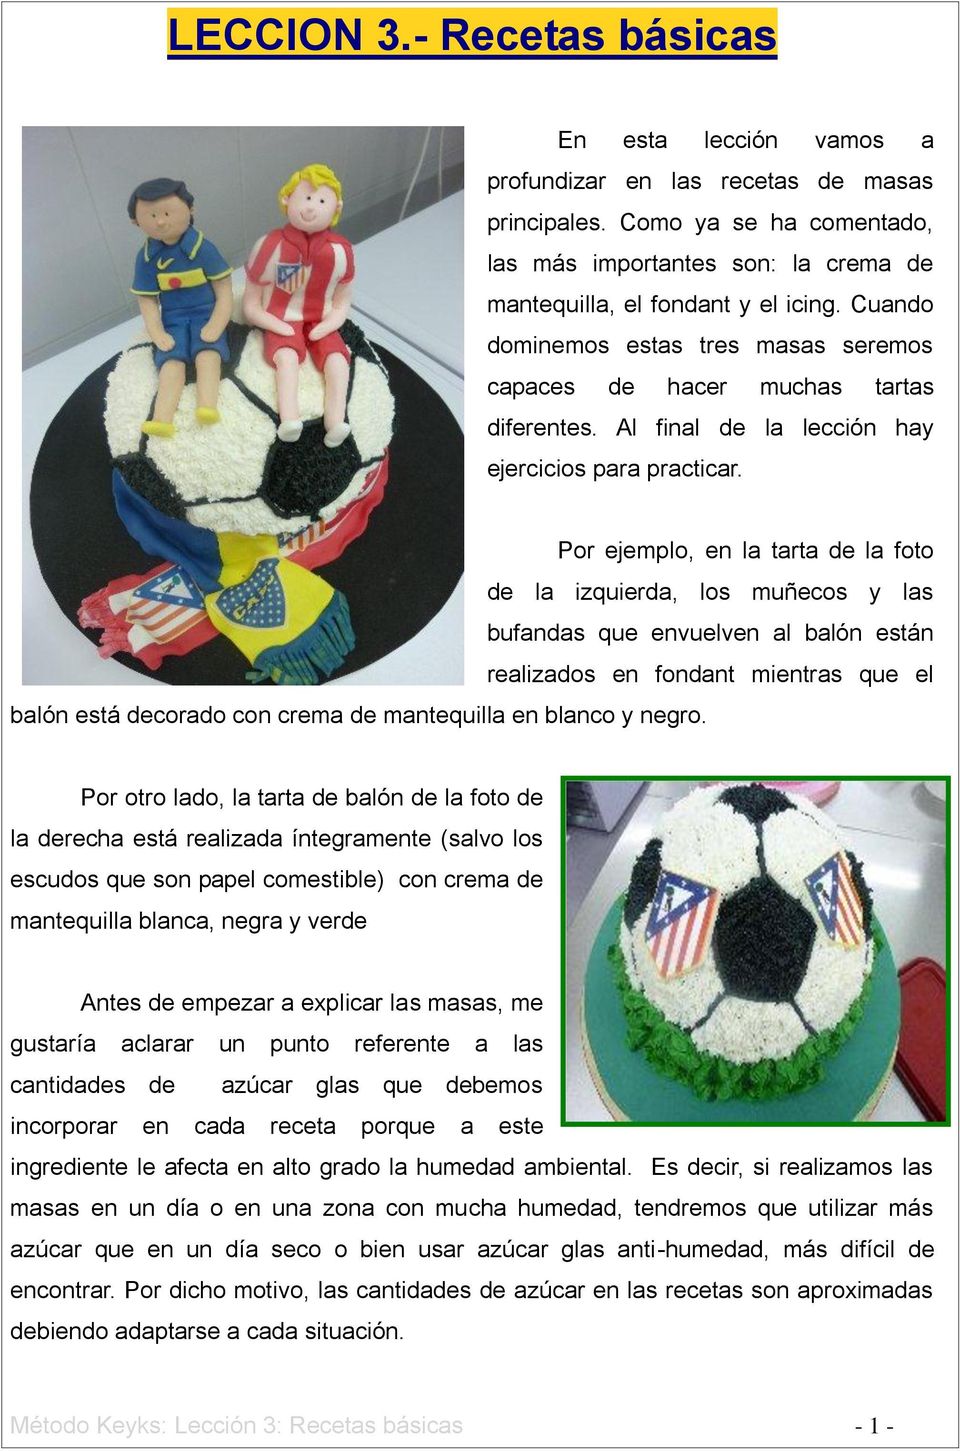 Por ejemplo, en la tarta de la foto de la izquierda, los muñecos y las bufandas que envuelven al balón están realizados en fondant mientras que el balón está decorado con crema de mantequilla en